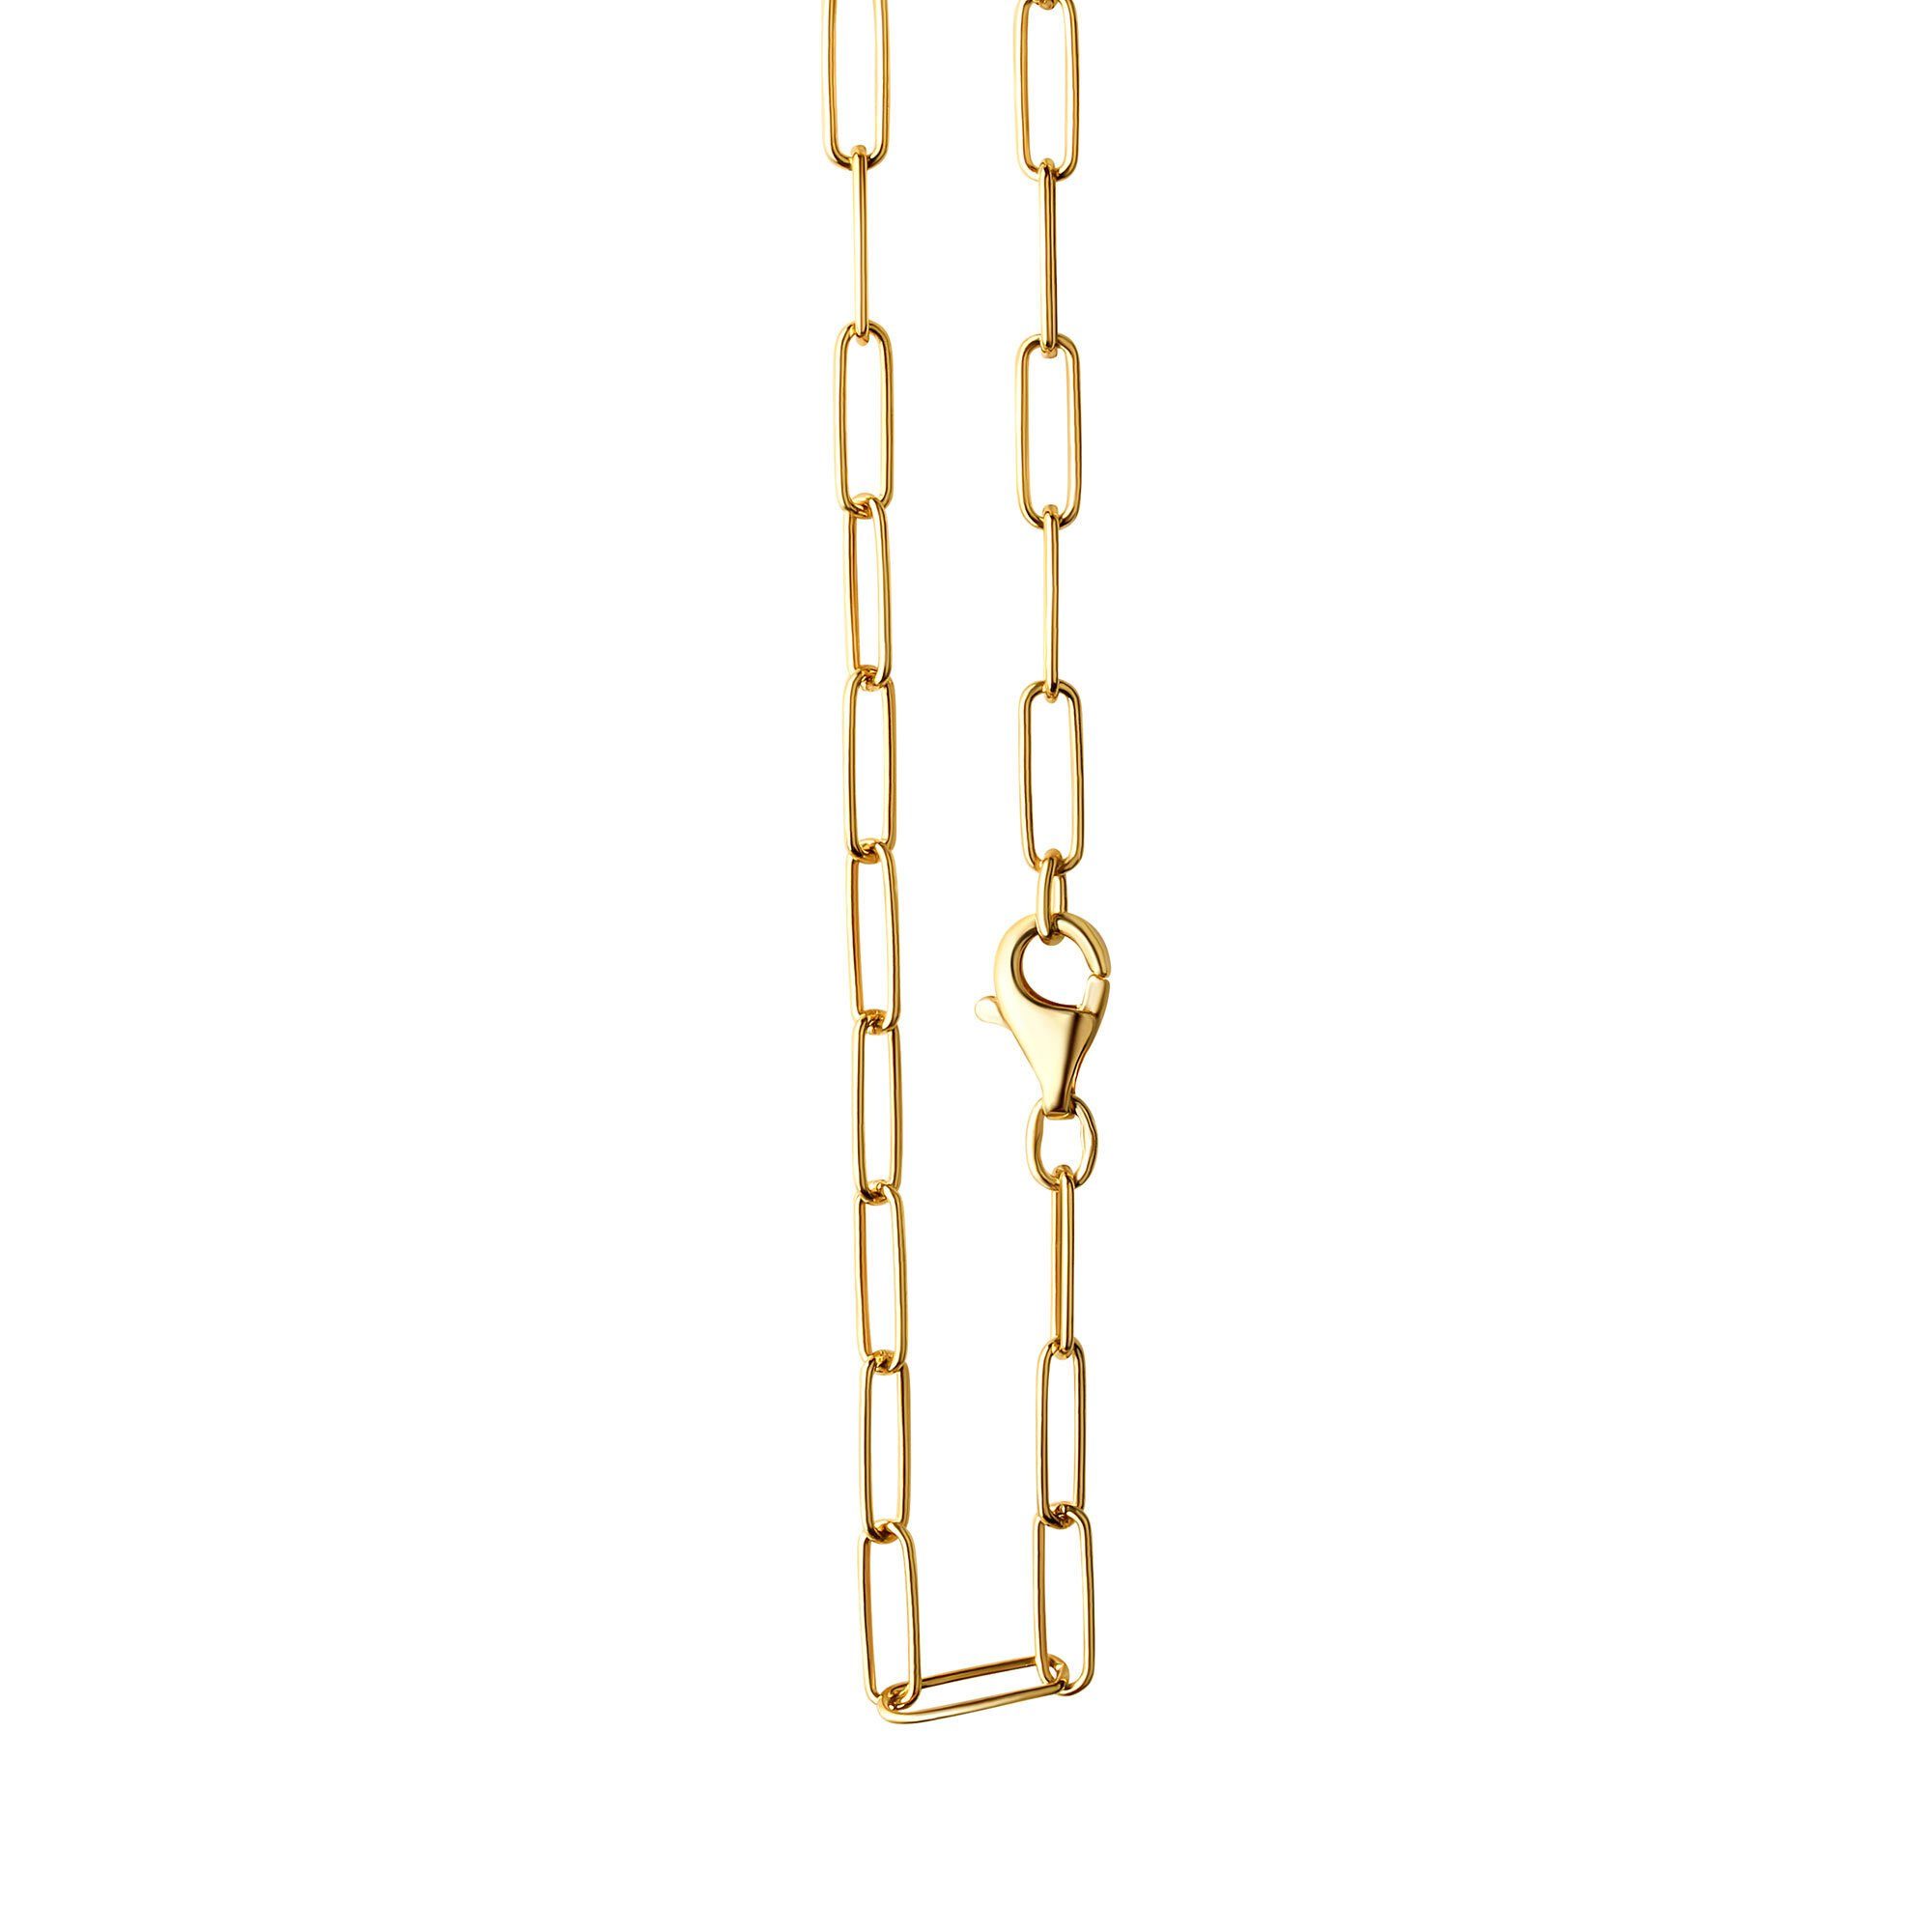 Vivance Collierkettchen 925/- Sterlingsilber vergoldet Gliederkette glanz 55 cm